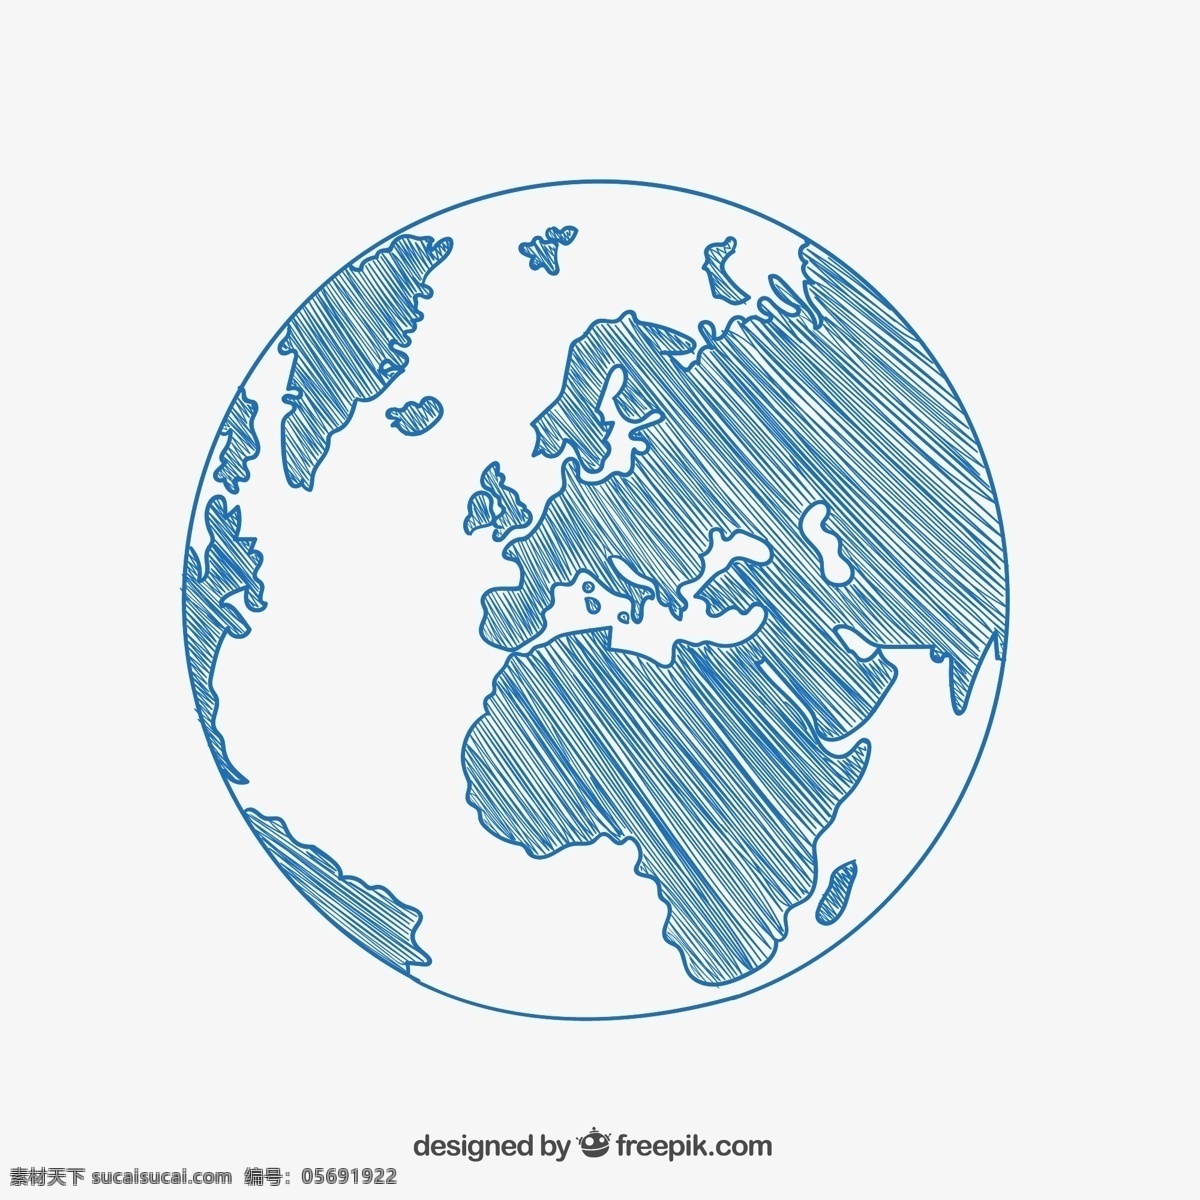 蓝色 手绘 地球 海洋 大陆板块 矢量图 格式 矢量 高清图片